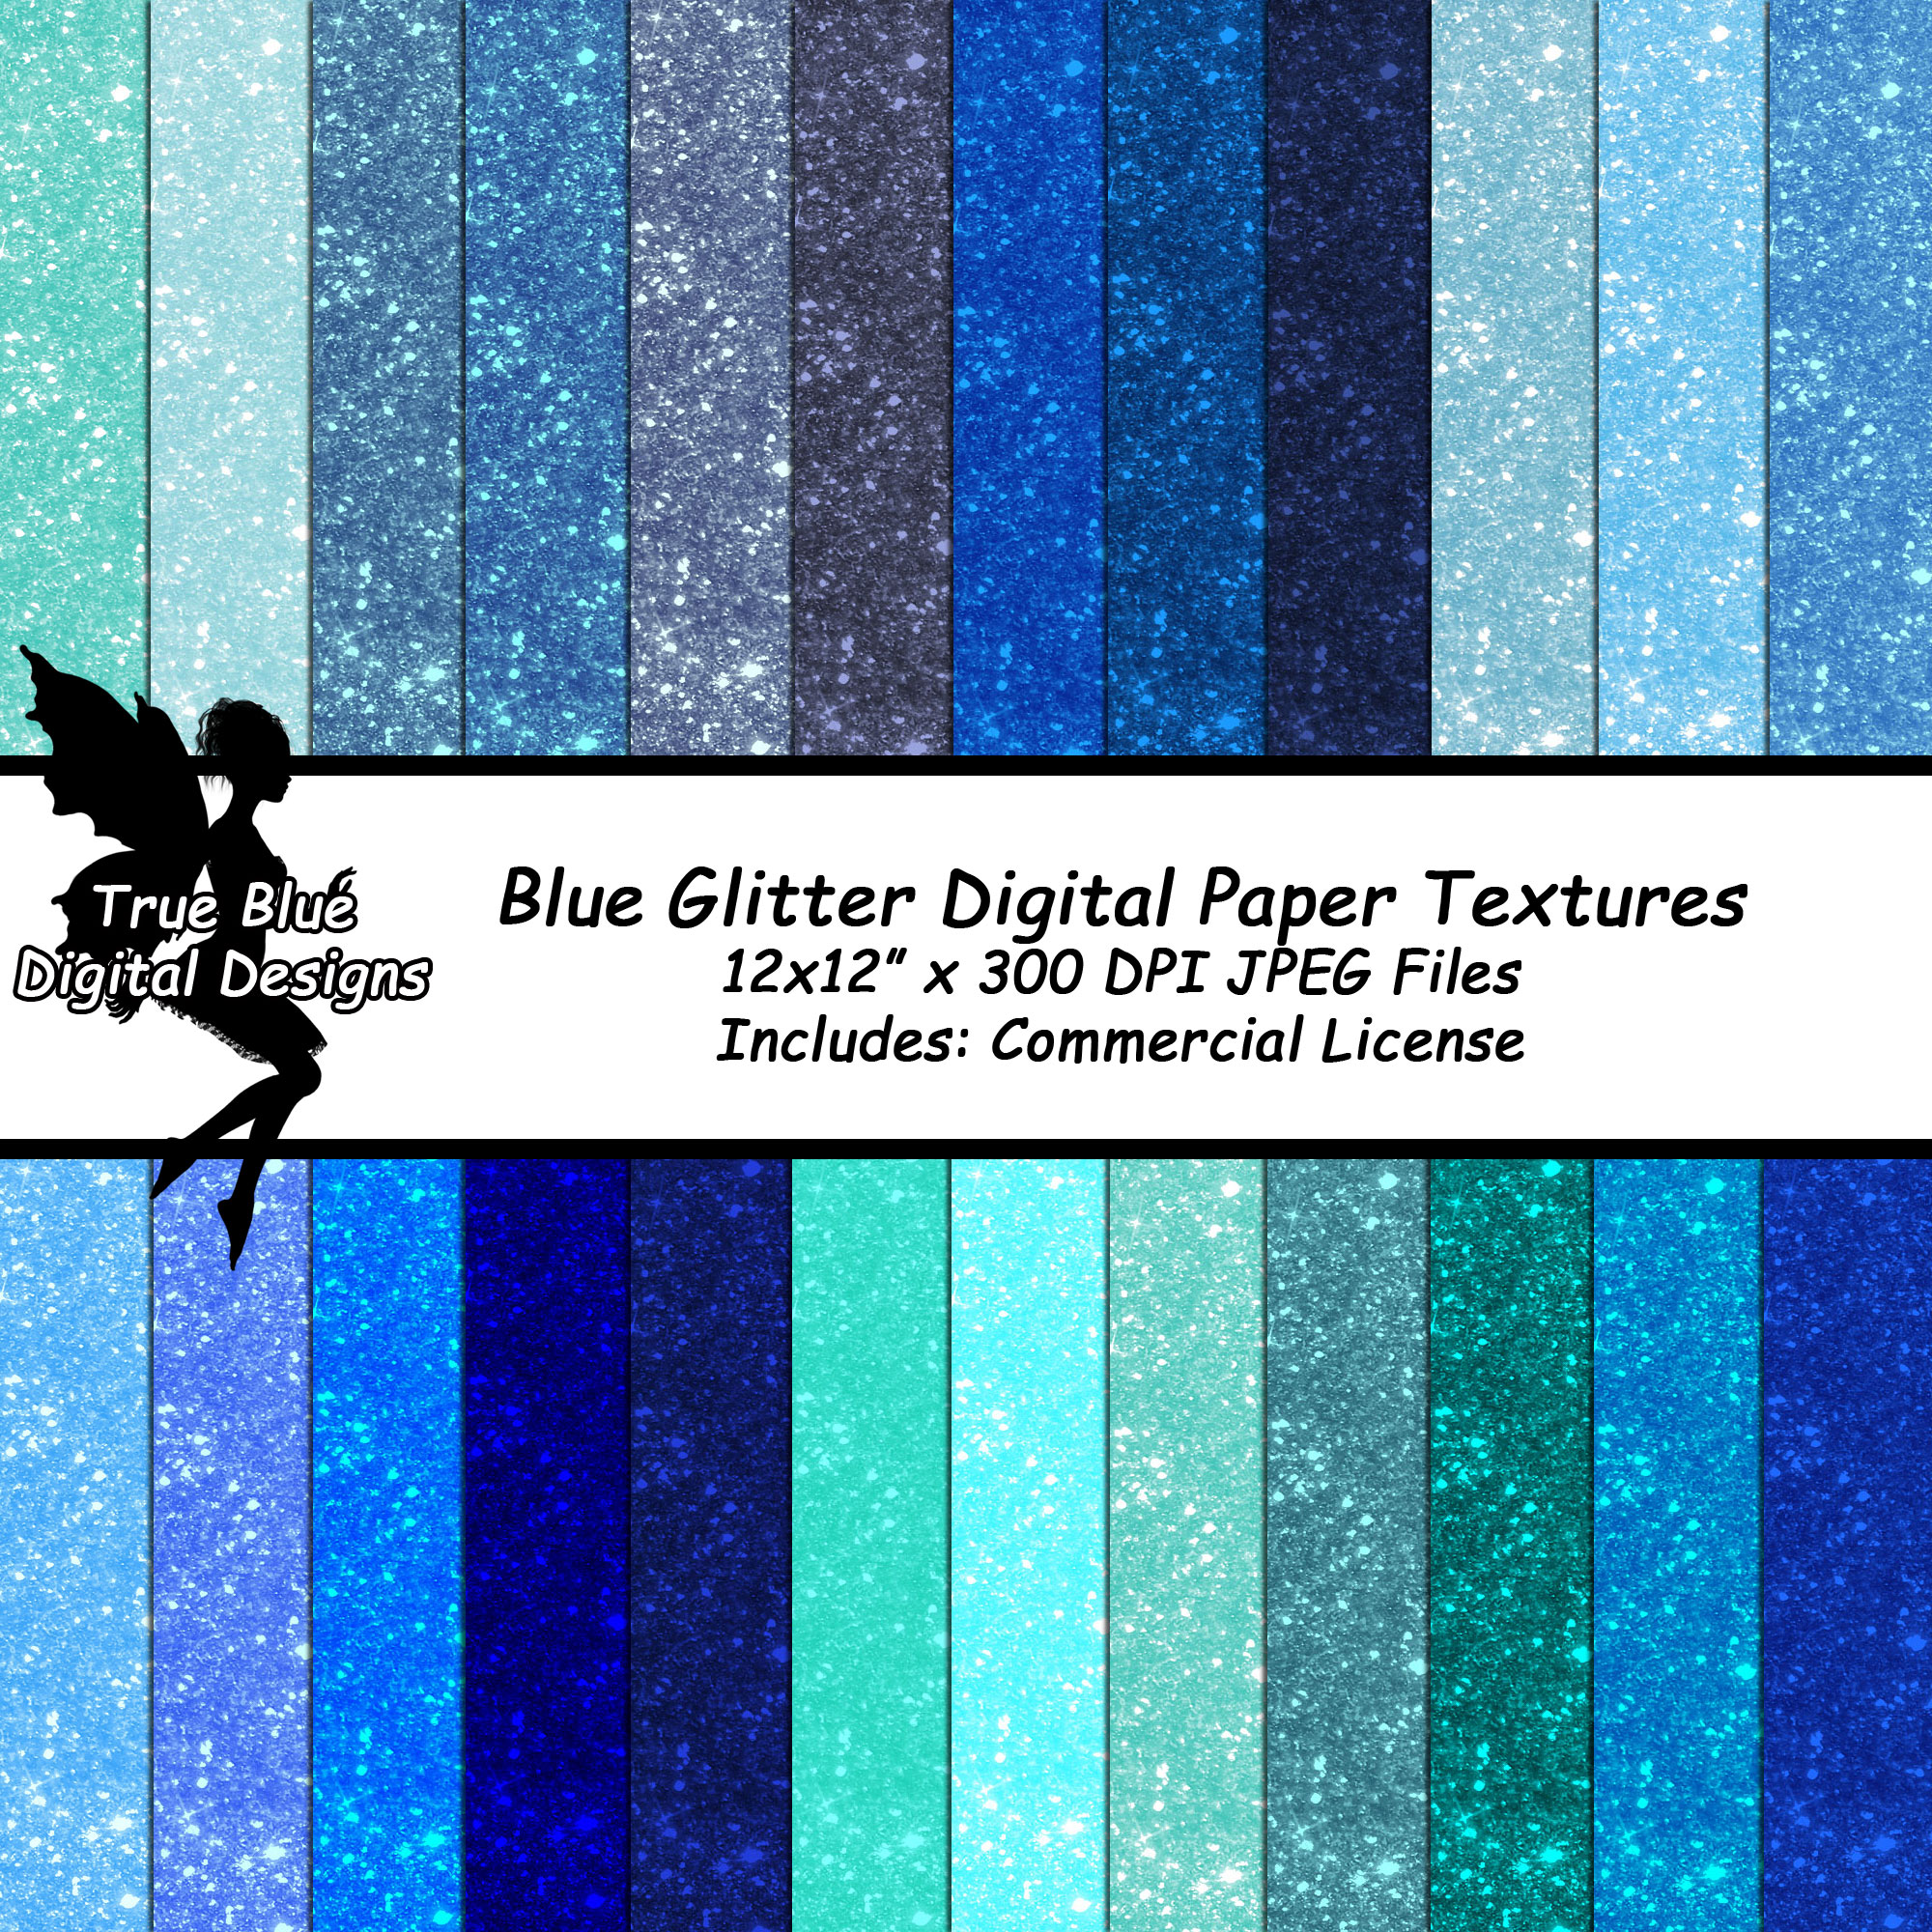 Blue Glitter Digital Paper